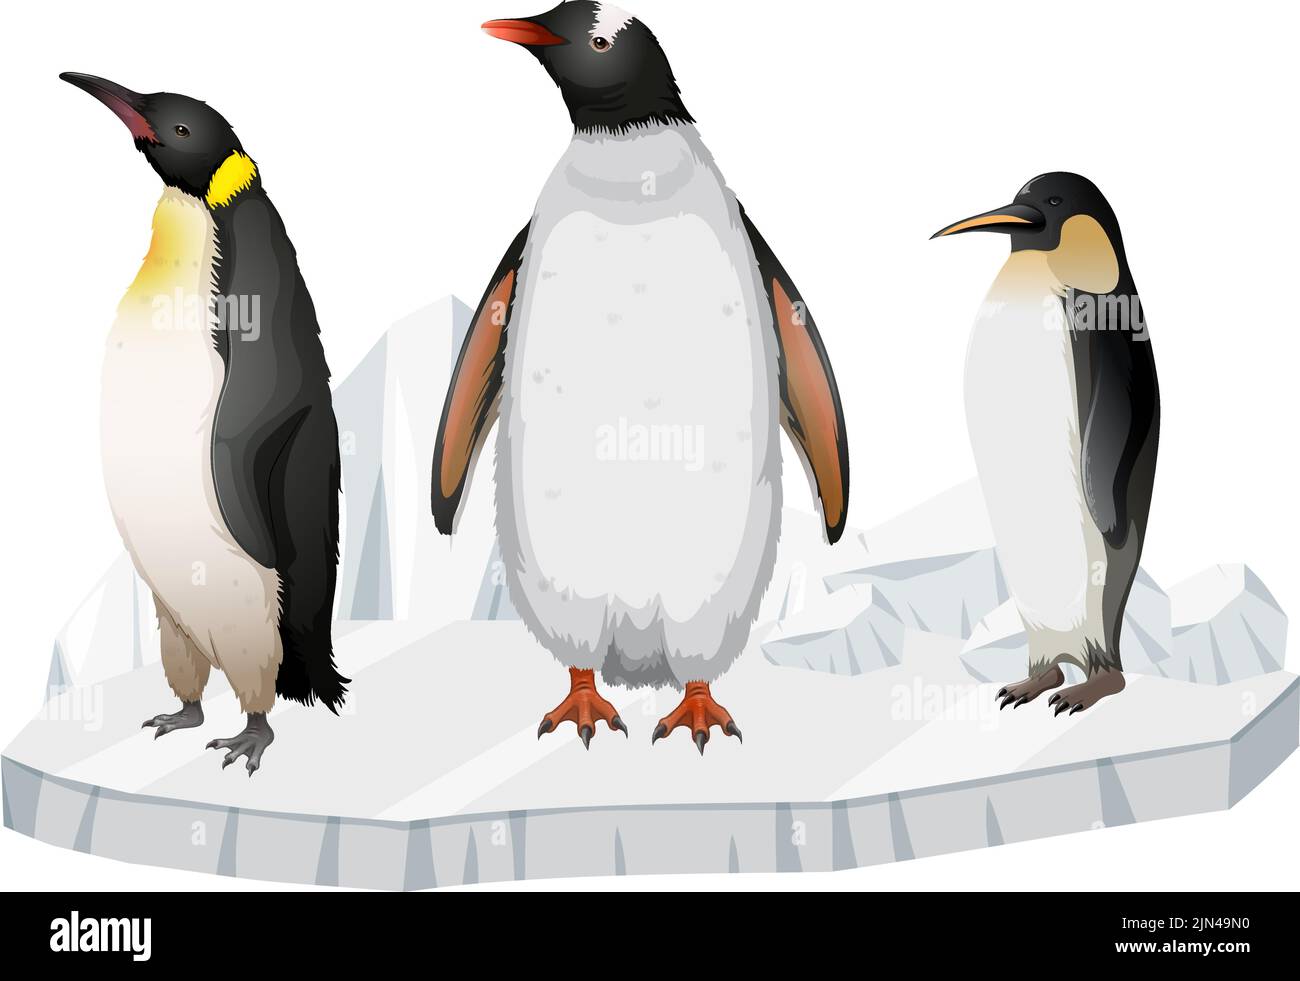 Pingouins debout sur l'illustration de la glace Illustration de Vecteur